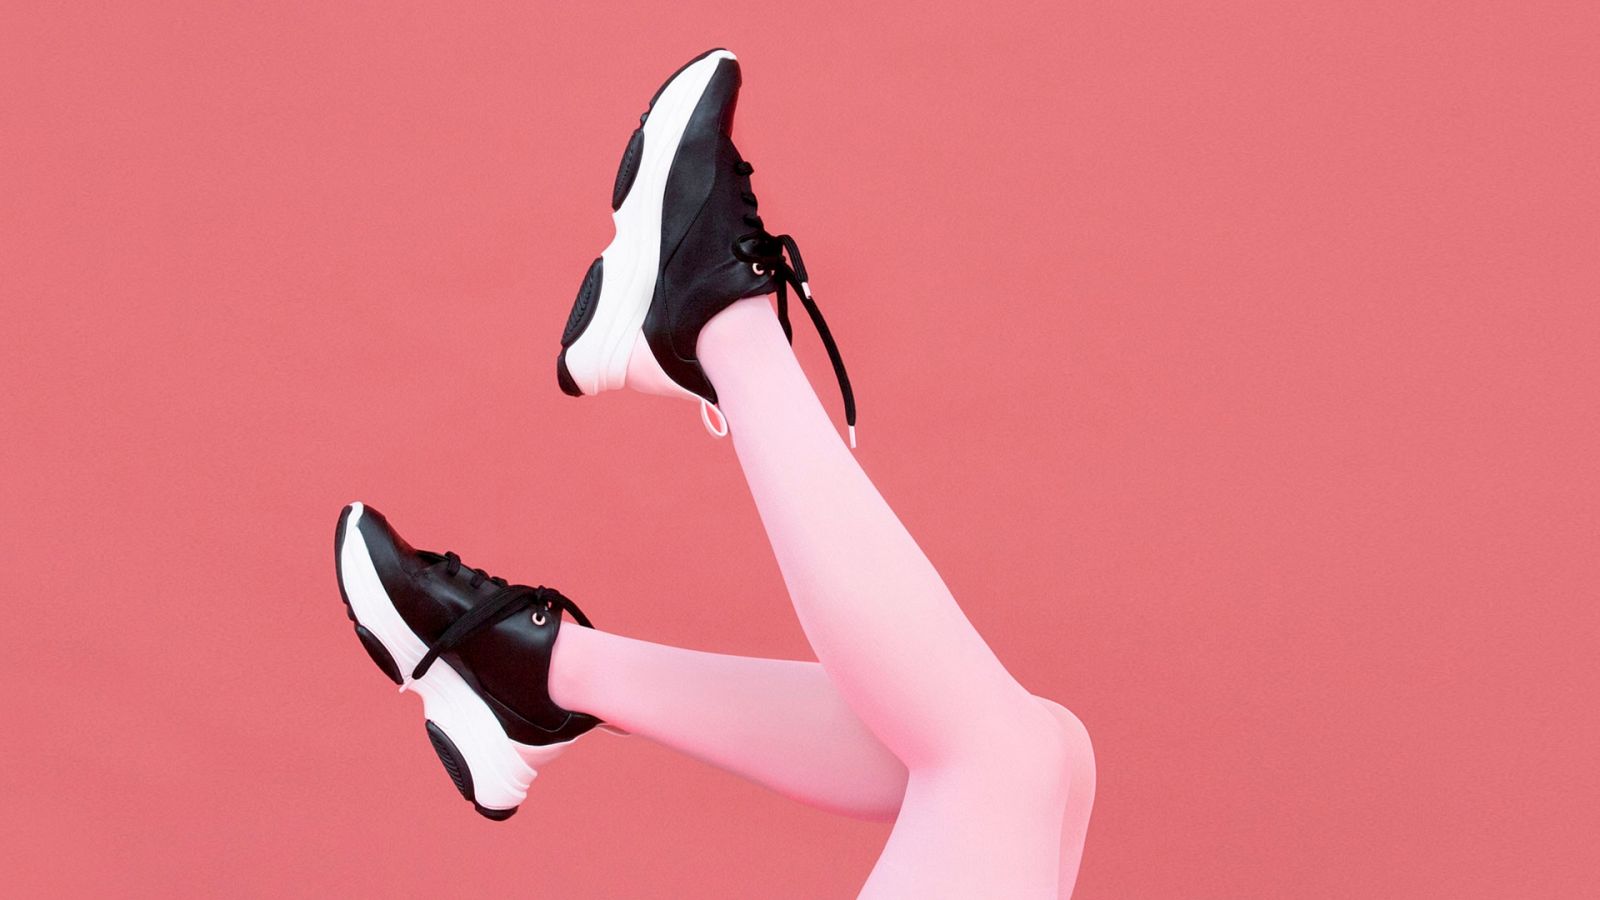 Zapato Zapatilla Mujer Charol Sneaker Urbana Plataforma Moda